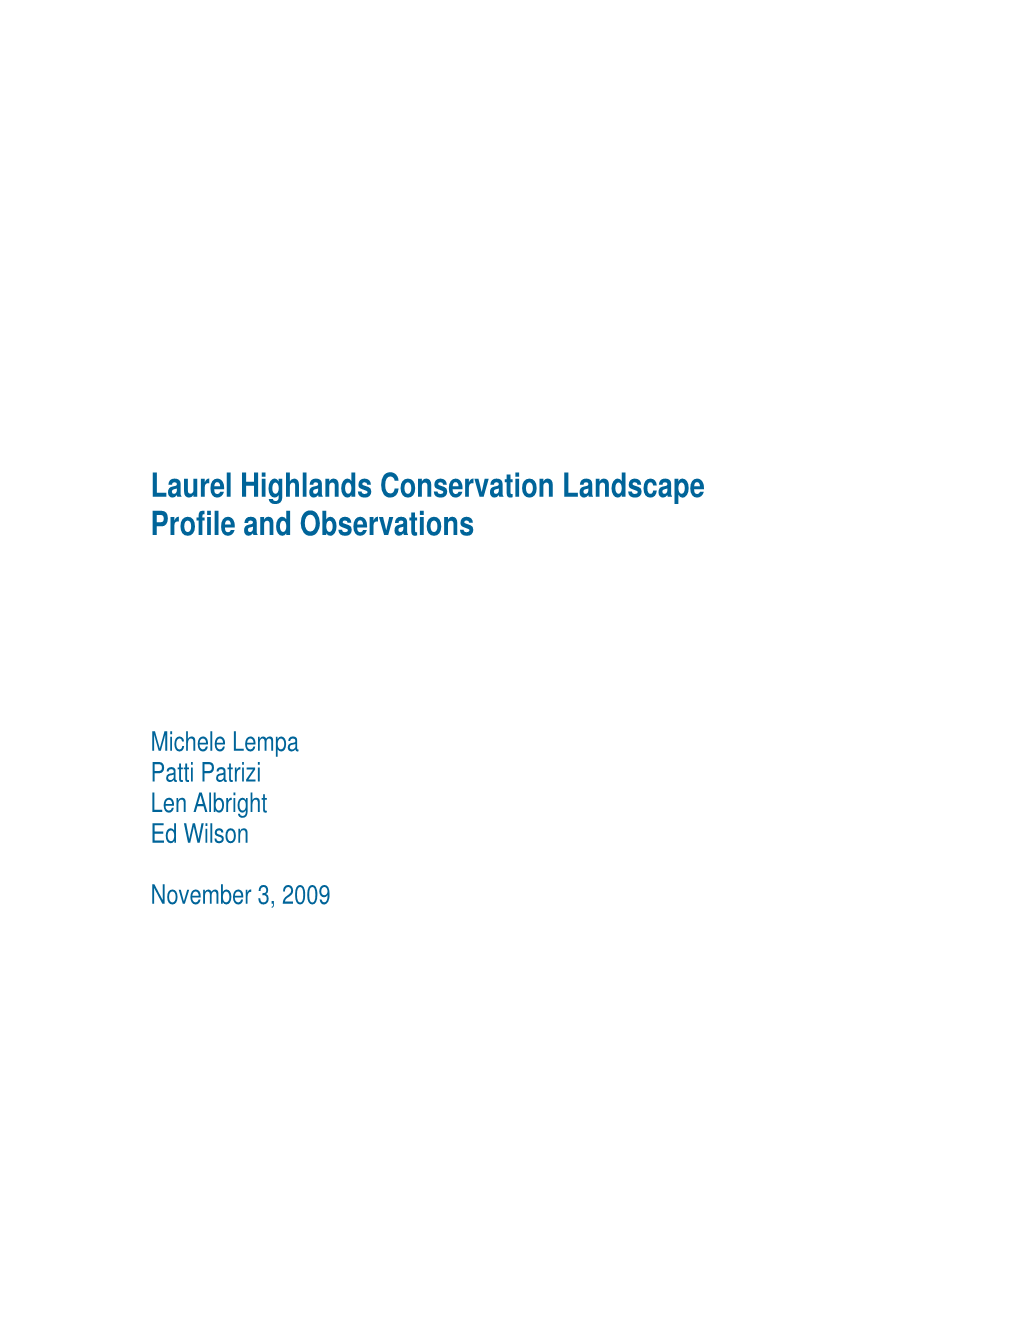 Laurel Highlands Conservation Landscape Profile and Observations